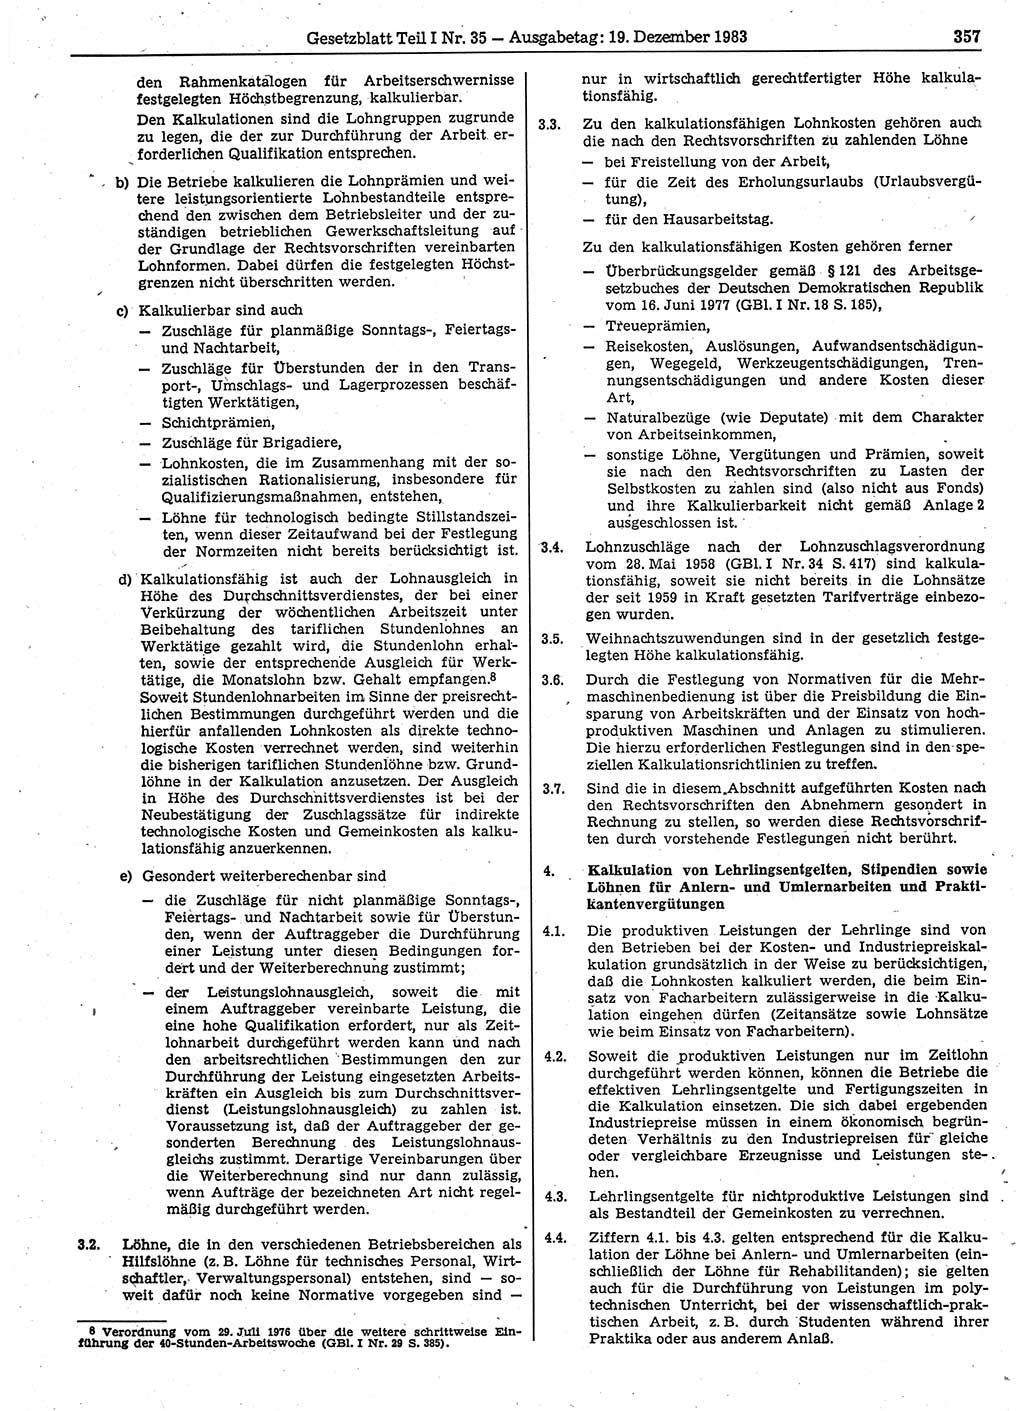 Gesetzblatt (GBl.) der Deutschen Demokratischen Republik (DDR) Teil Ⅰ 1983, Seite 357 (GBl. DDR Ⅰ 1983, S. 357)